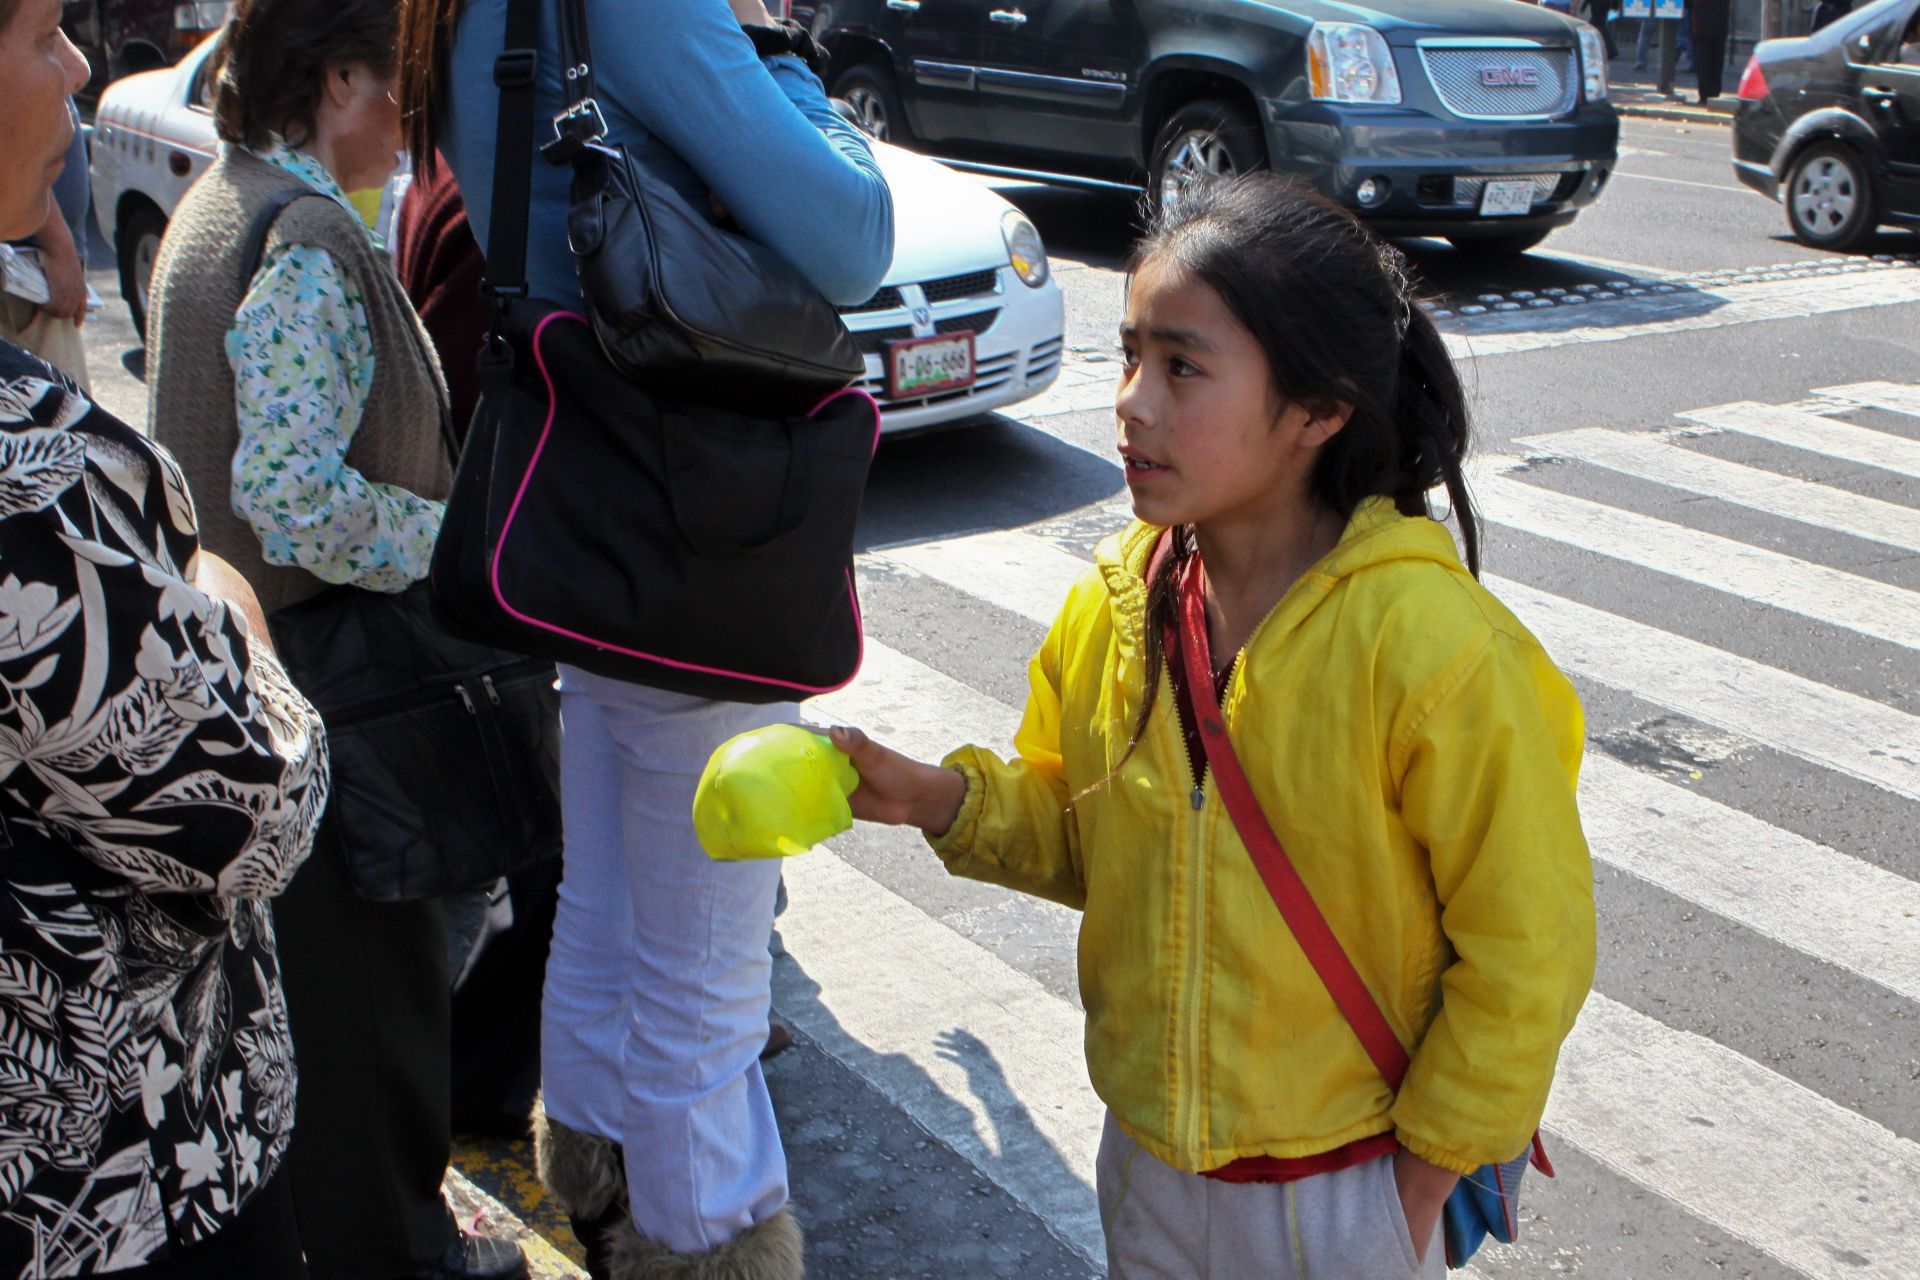 Los alquilan por 100 pesos: Alertan por "renta" de niños en San Miguel de Allende